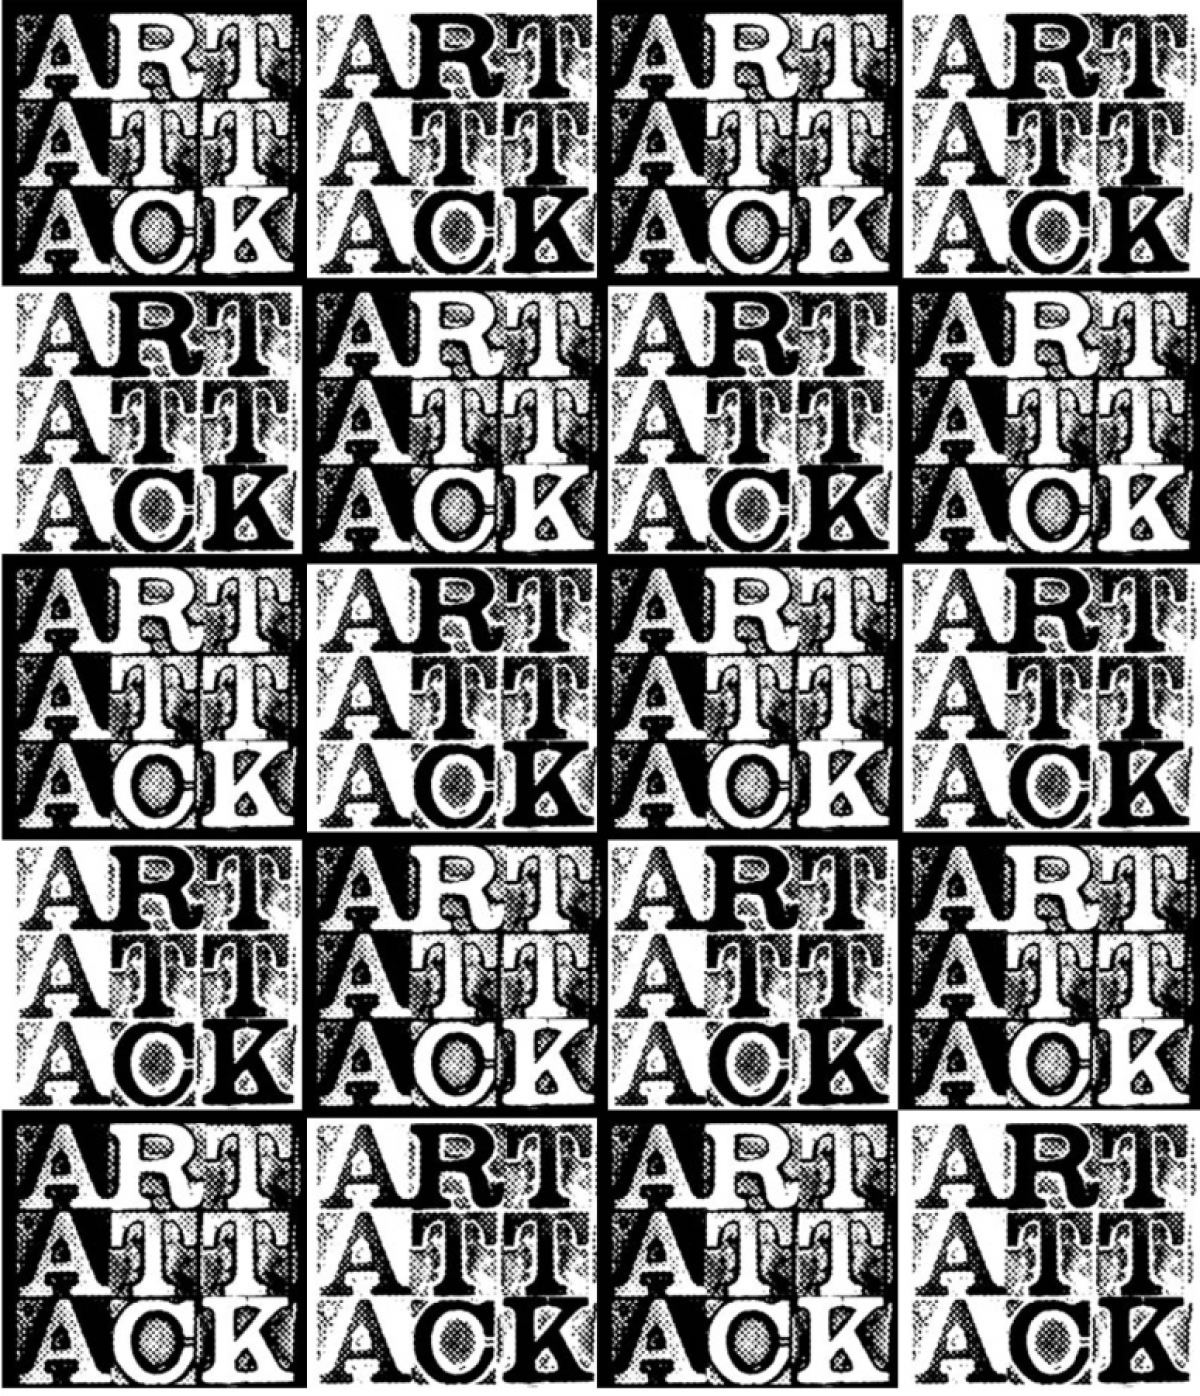 art attack